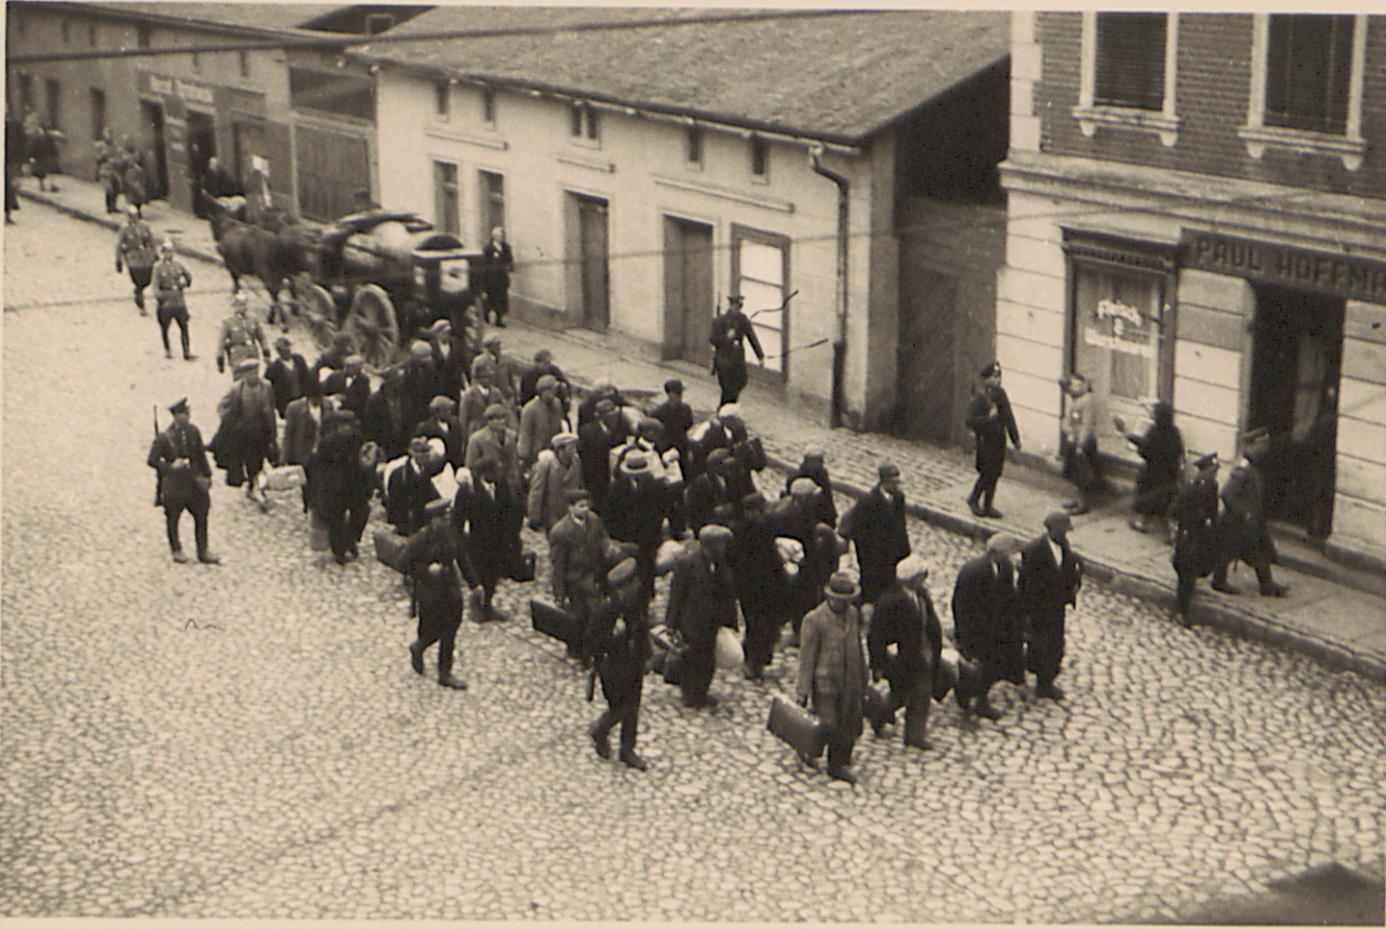 Fot. 1. Transport aresztowanych na stację kolejową (ujęcie pierwsze). Źródło: I. Z. Dok. IV – 132.